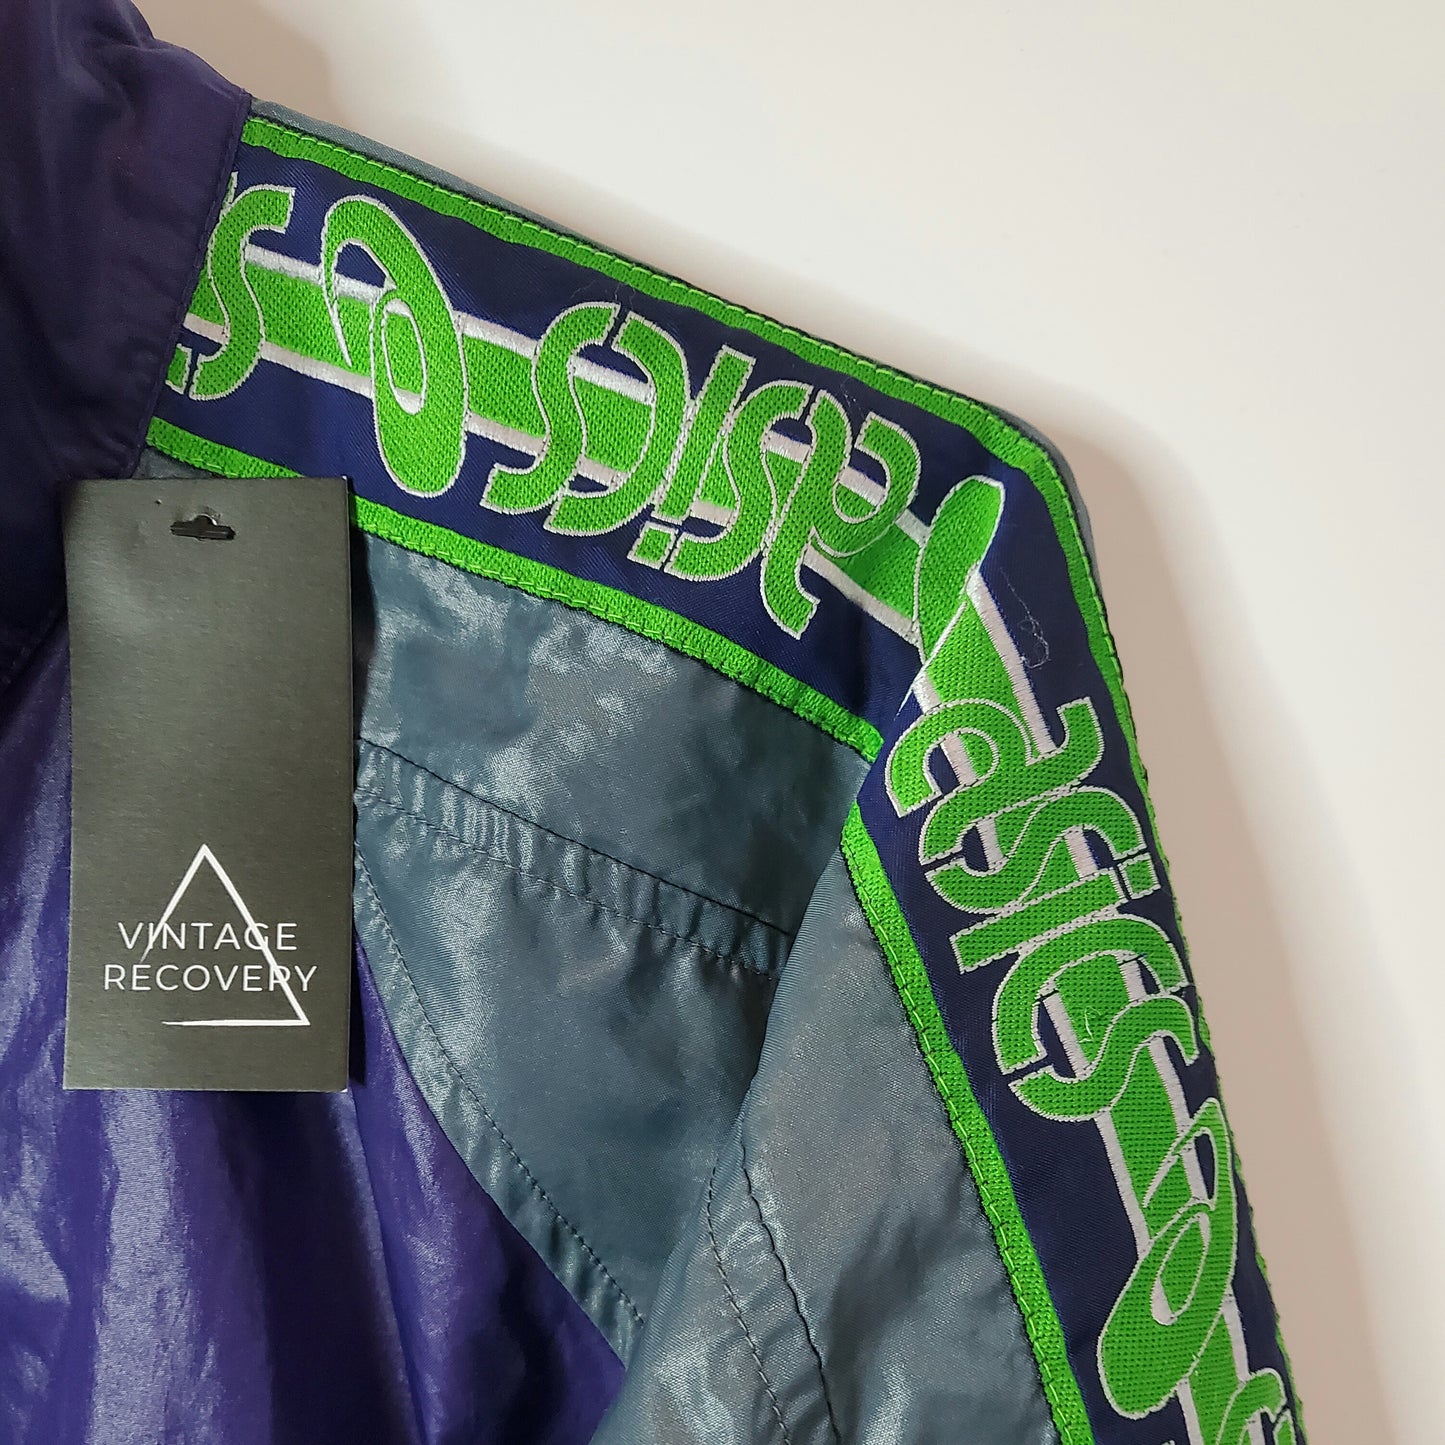 Vintage 90s Aasic Tape Arm Windbreaker Jacket Purple Size XL